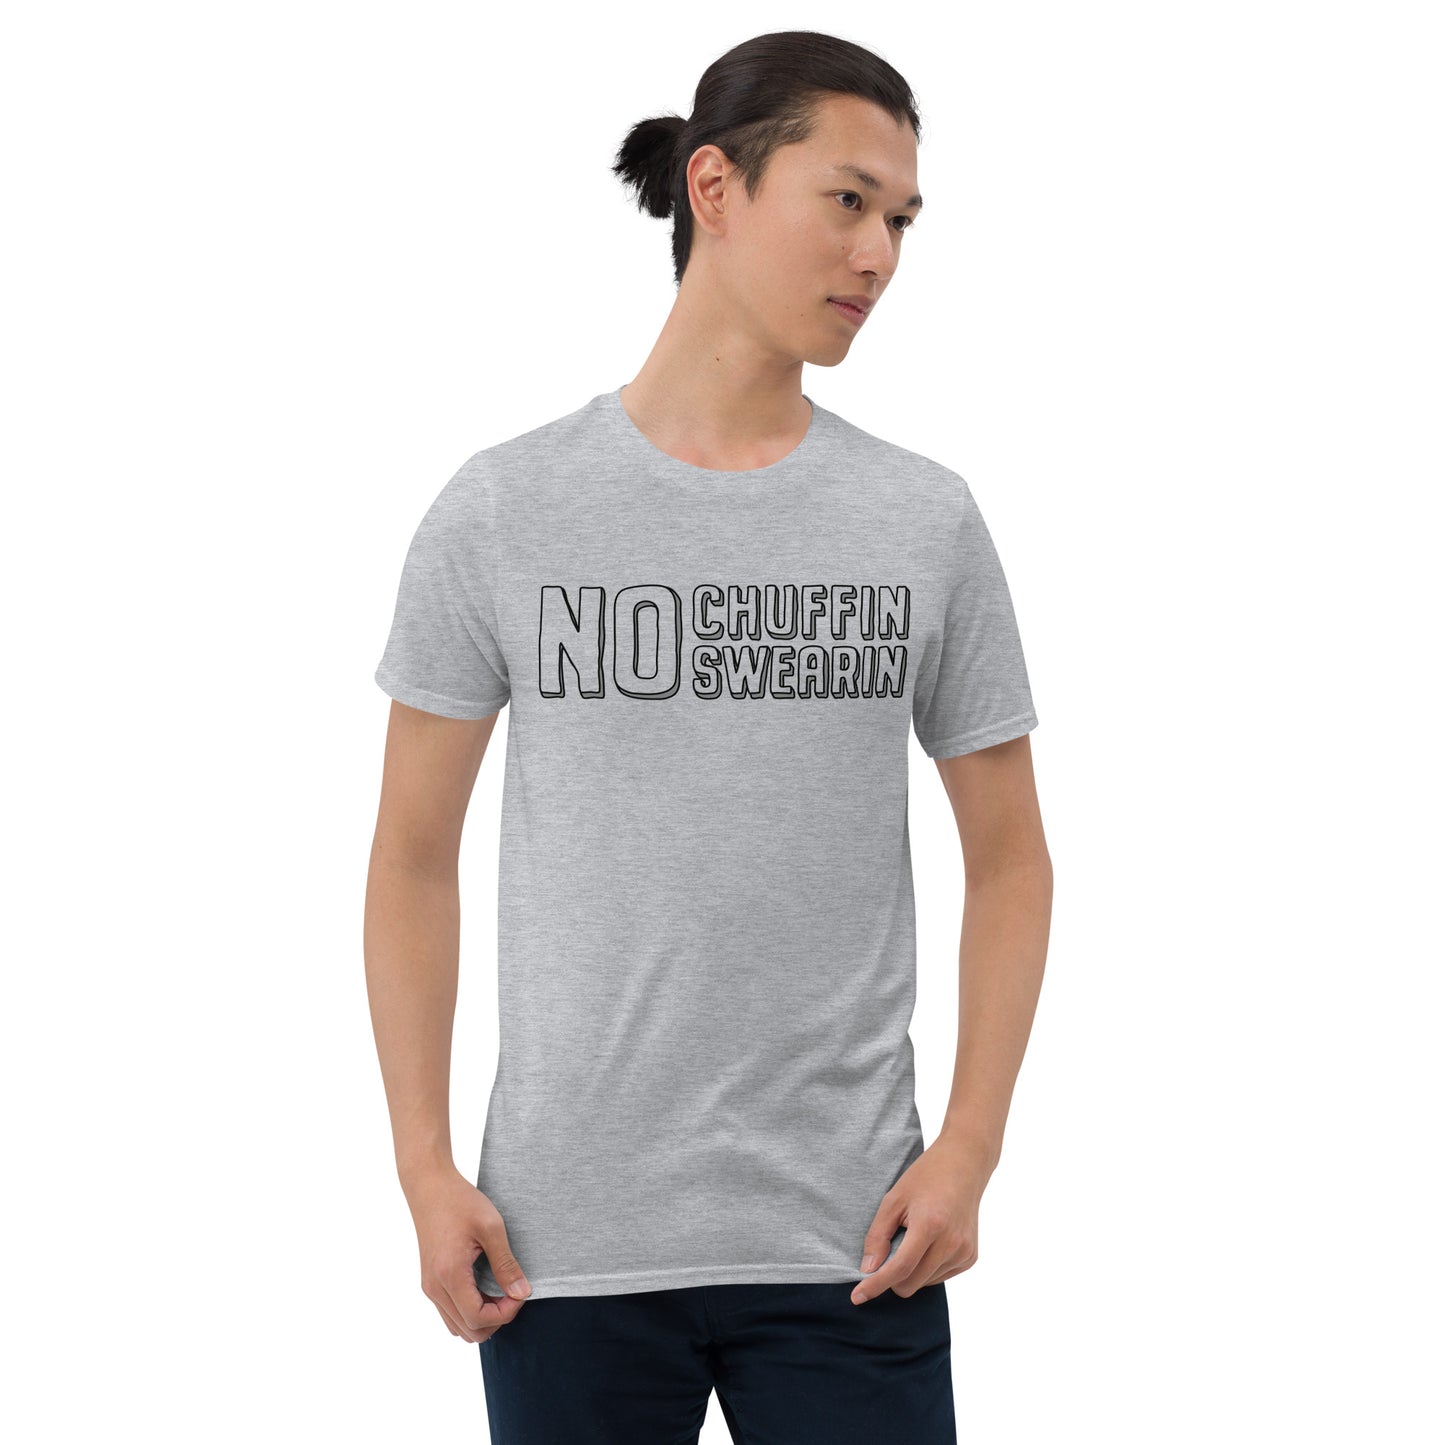 T-Shirt - No Chuffing Swearing